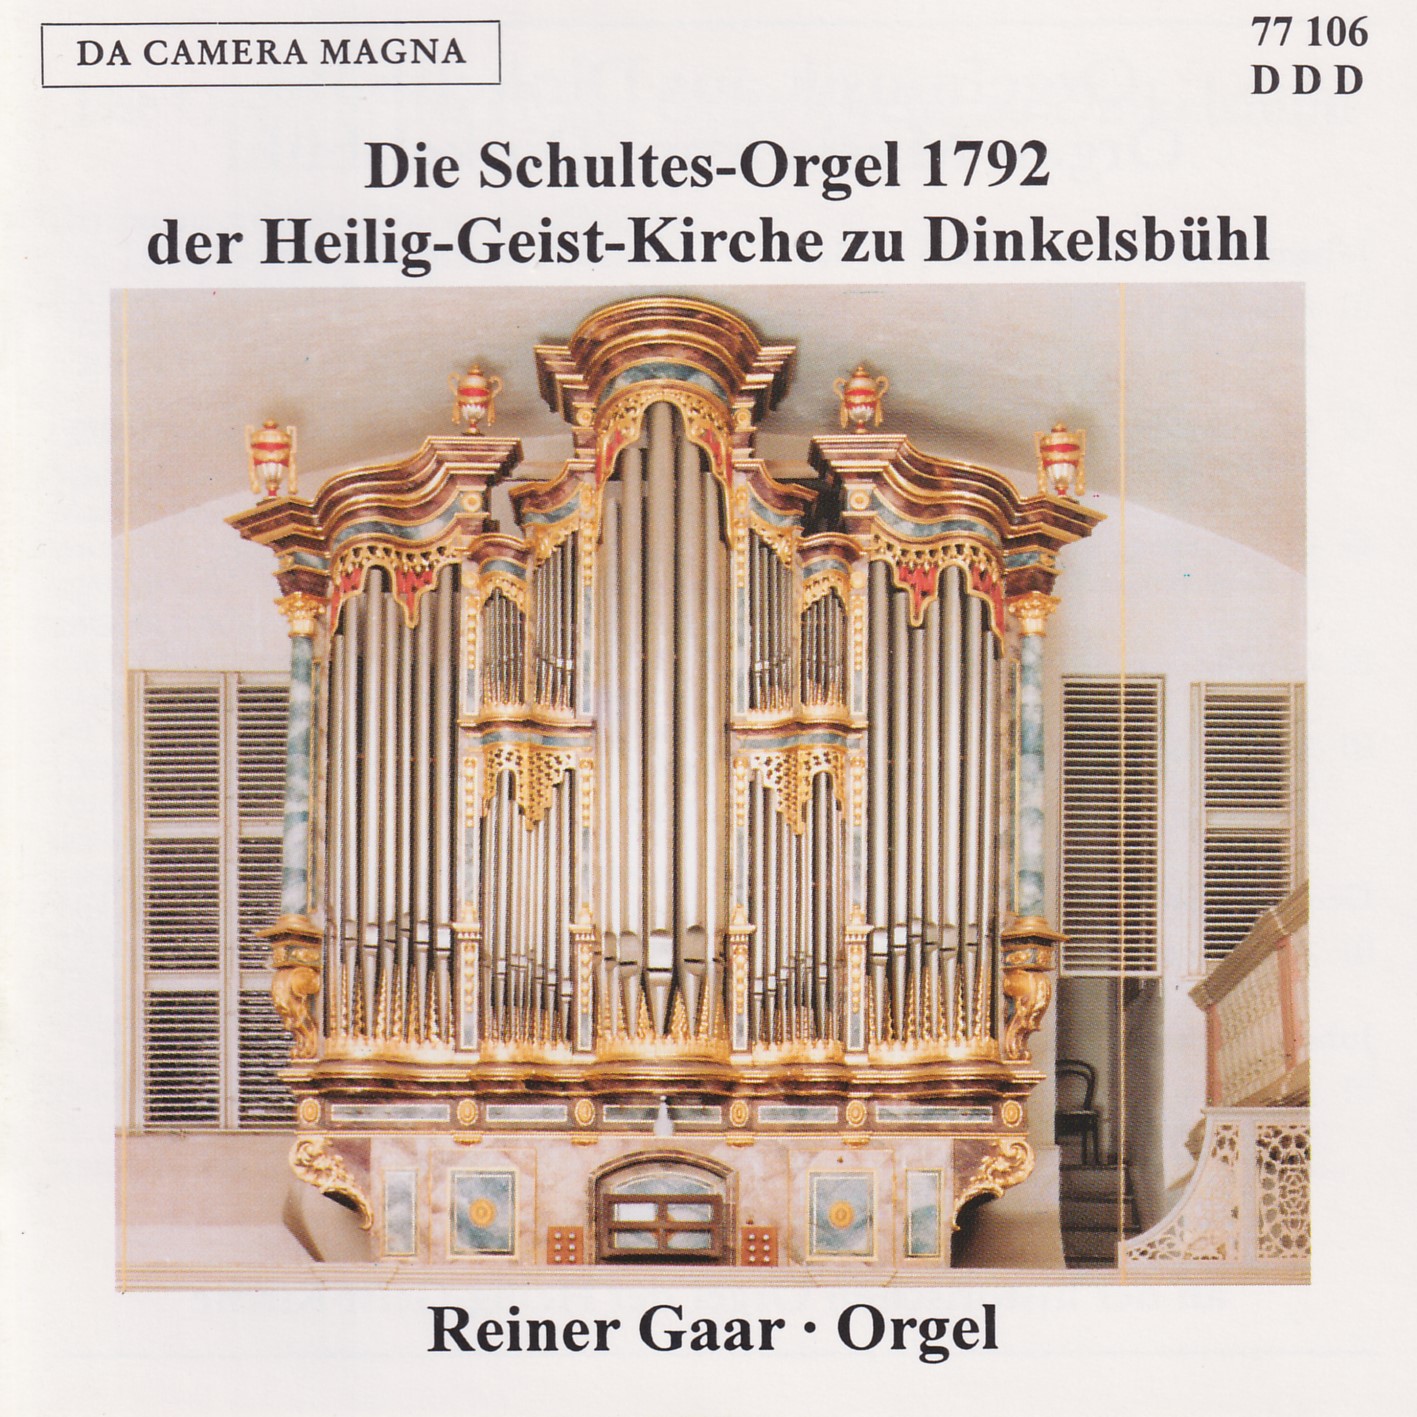 Schultes-Orgel von 1792 - Dinkelsbühl